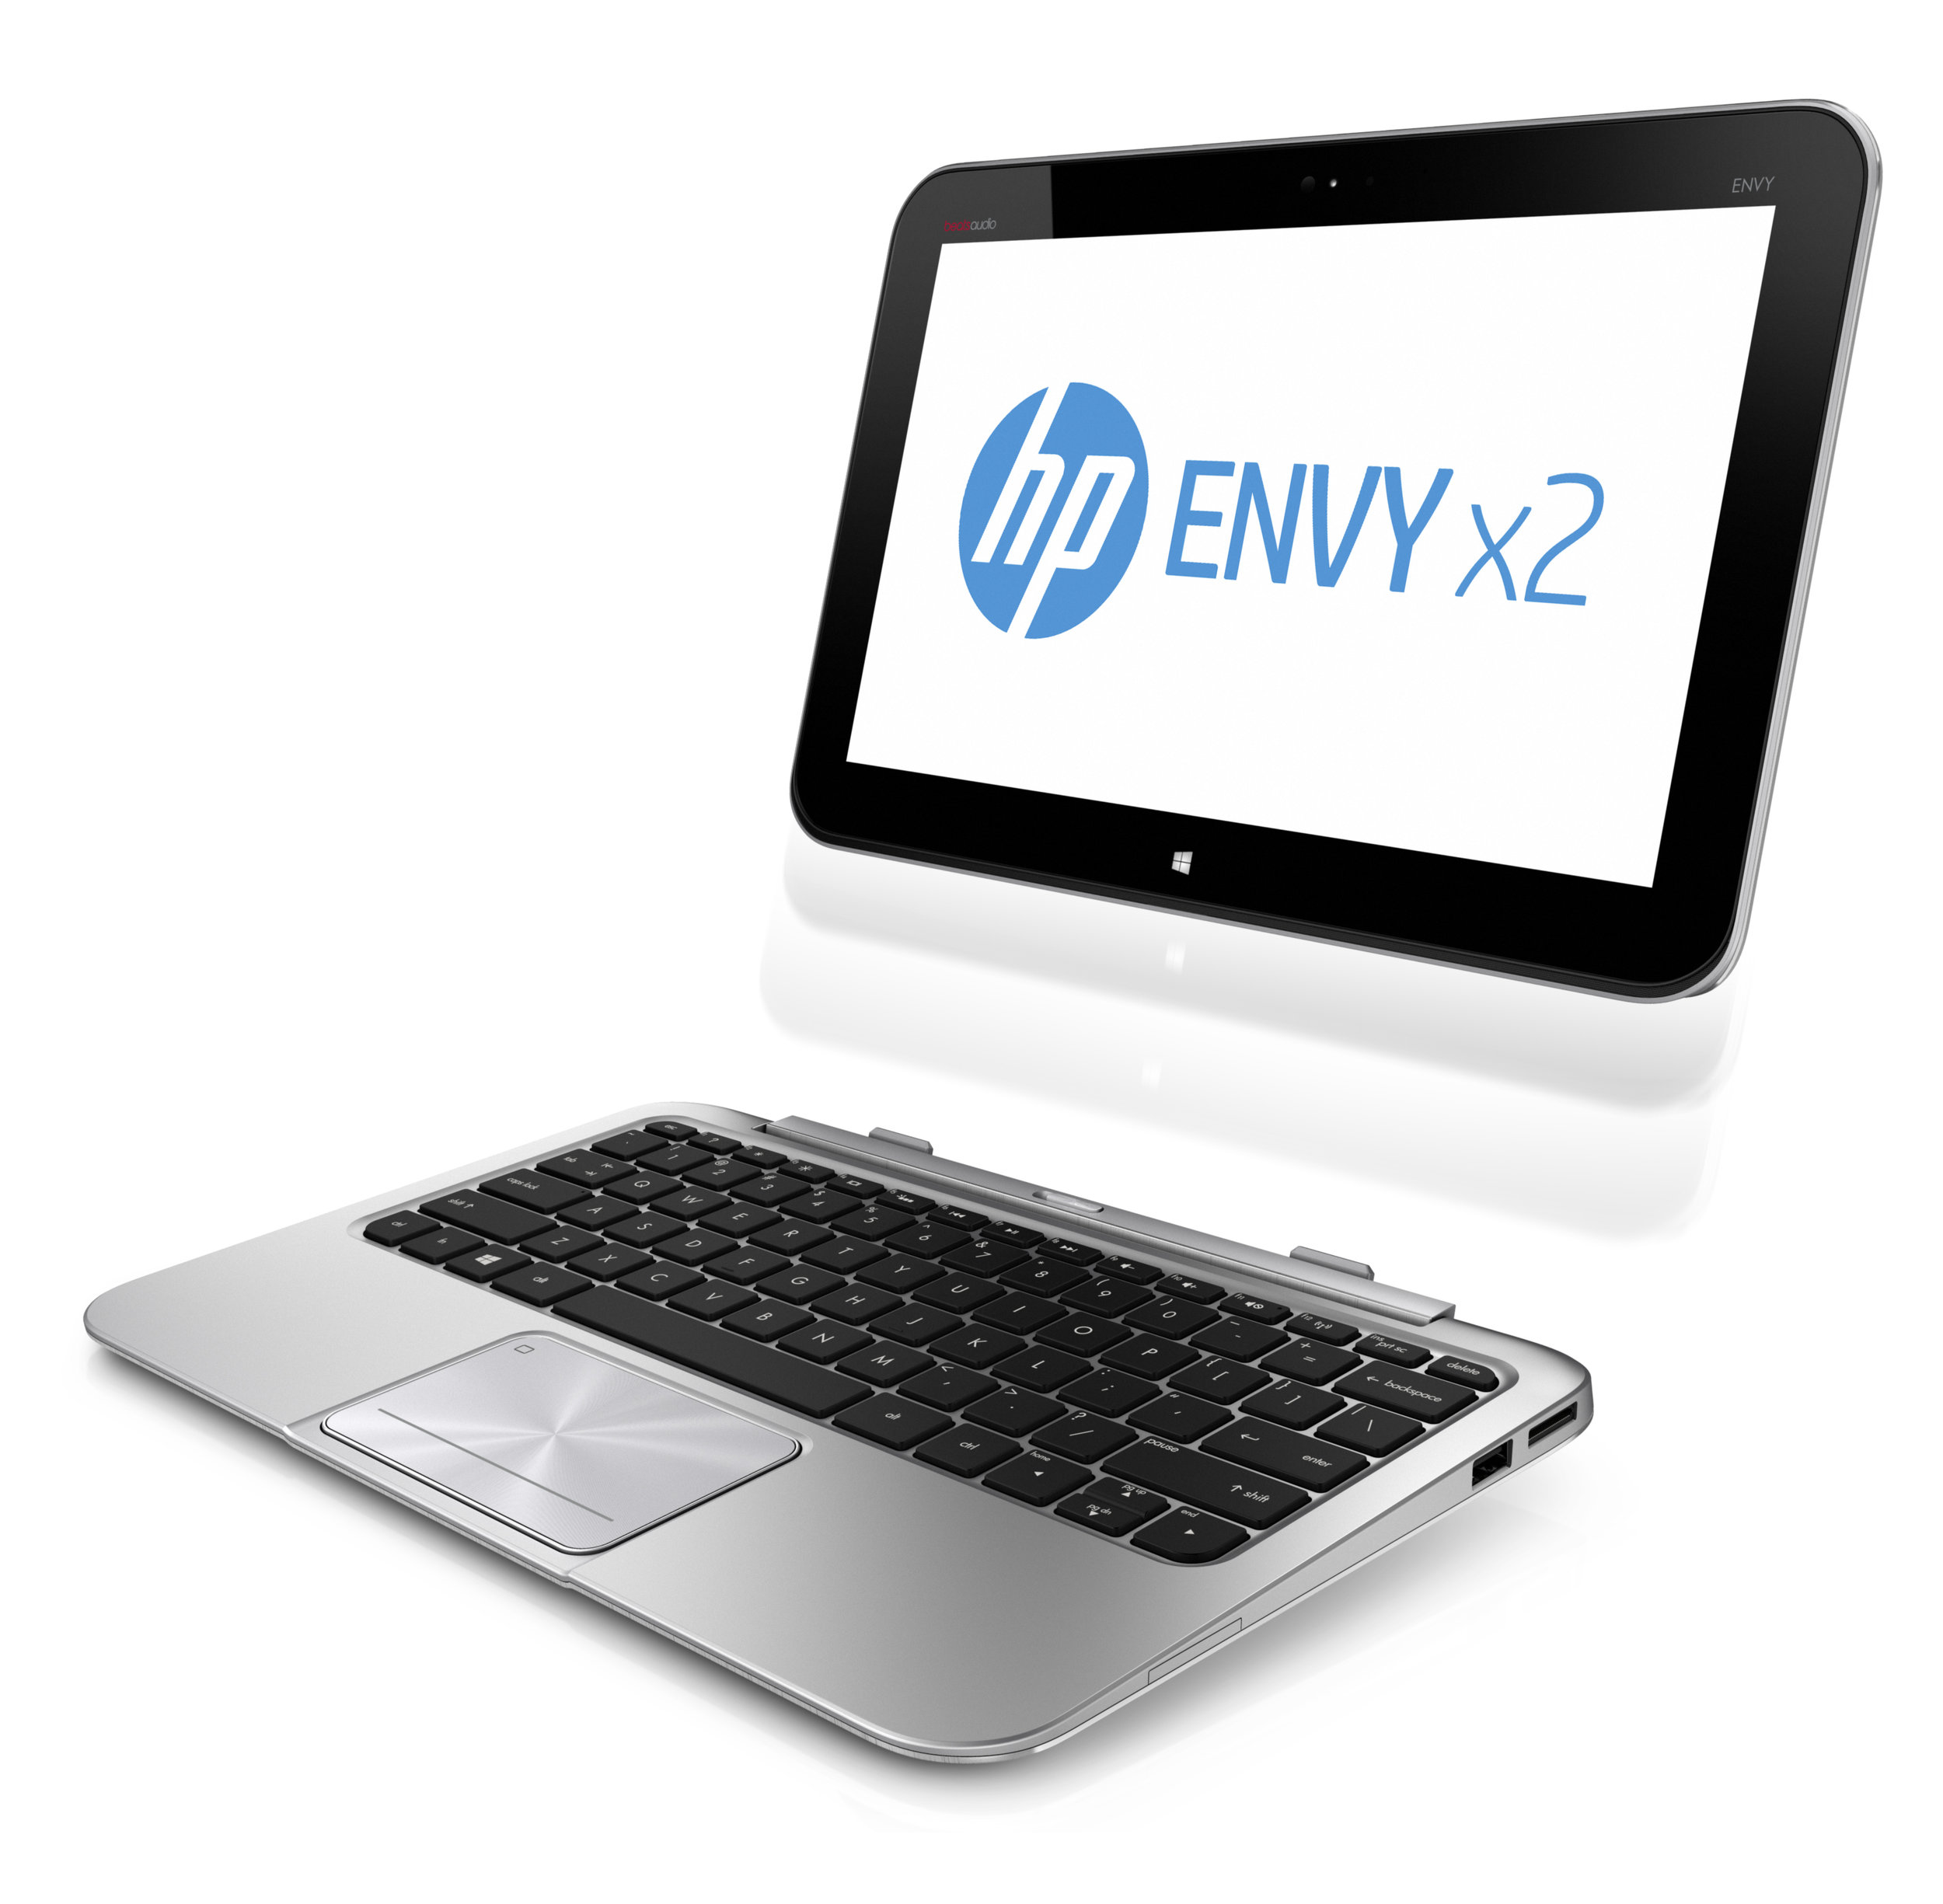 HP-ENVY-x2.jpg